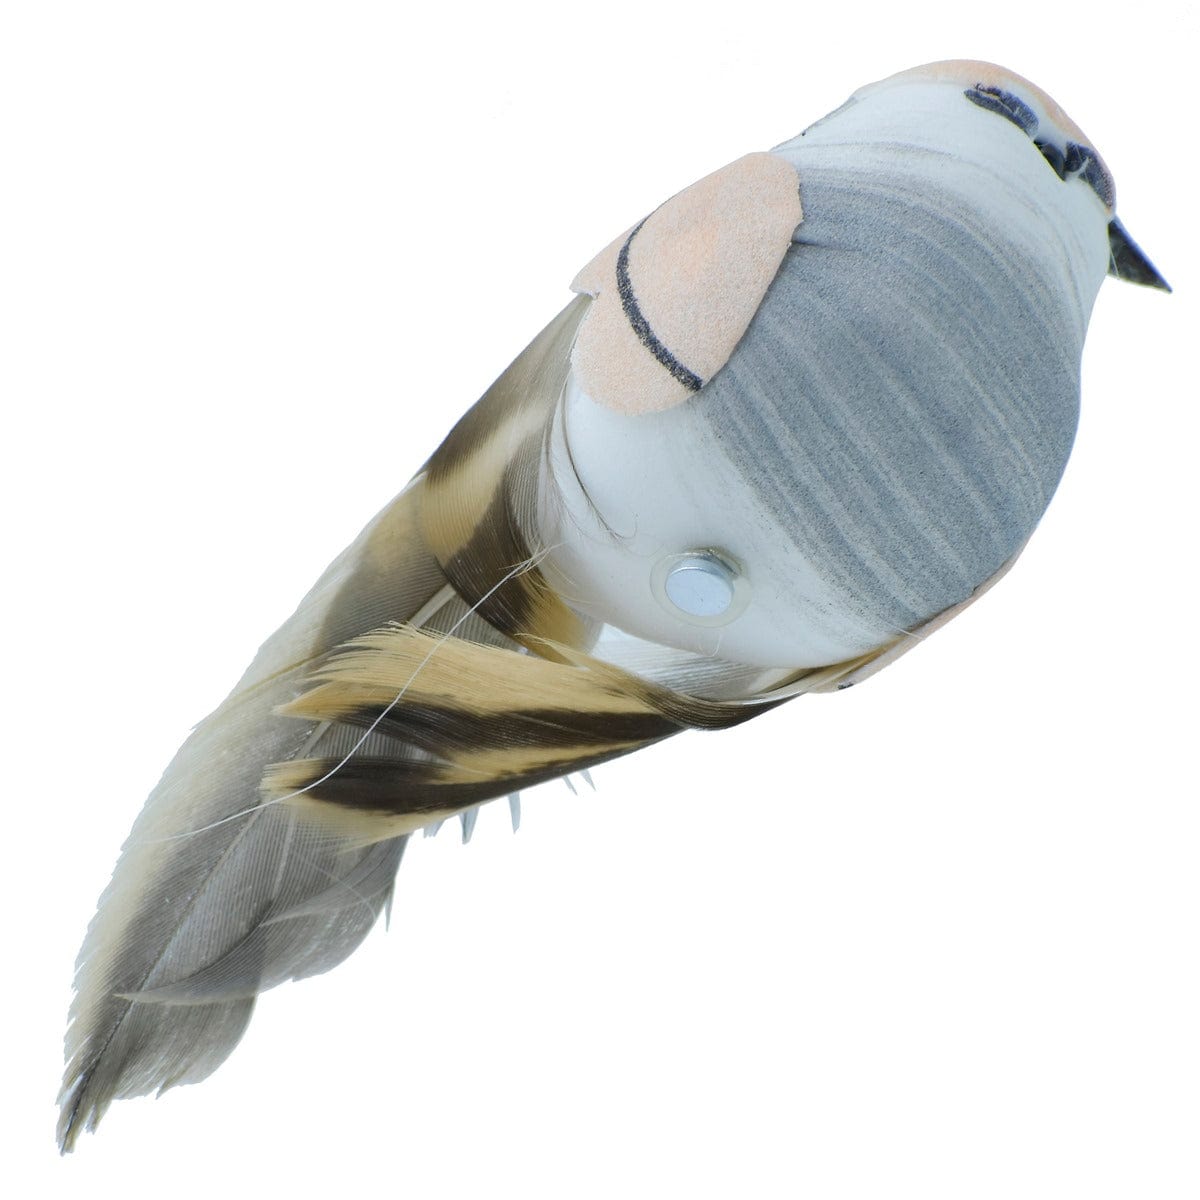 jags-mumbai Artificial Bird Craft Artificial Bird With Magnet TH10446